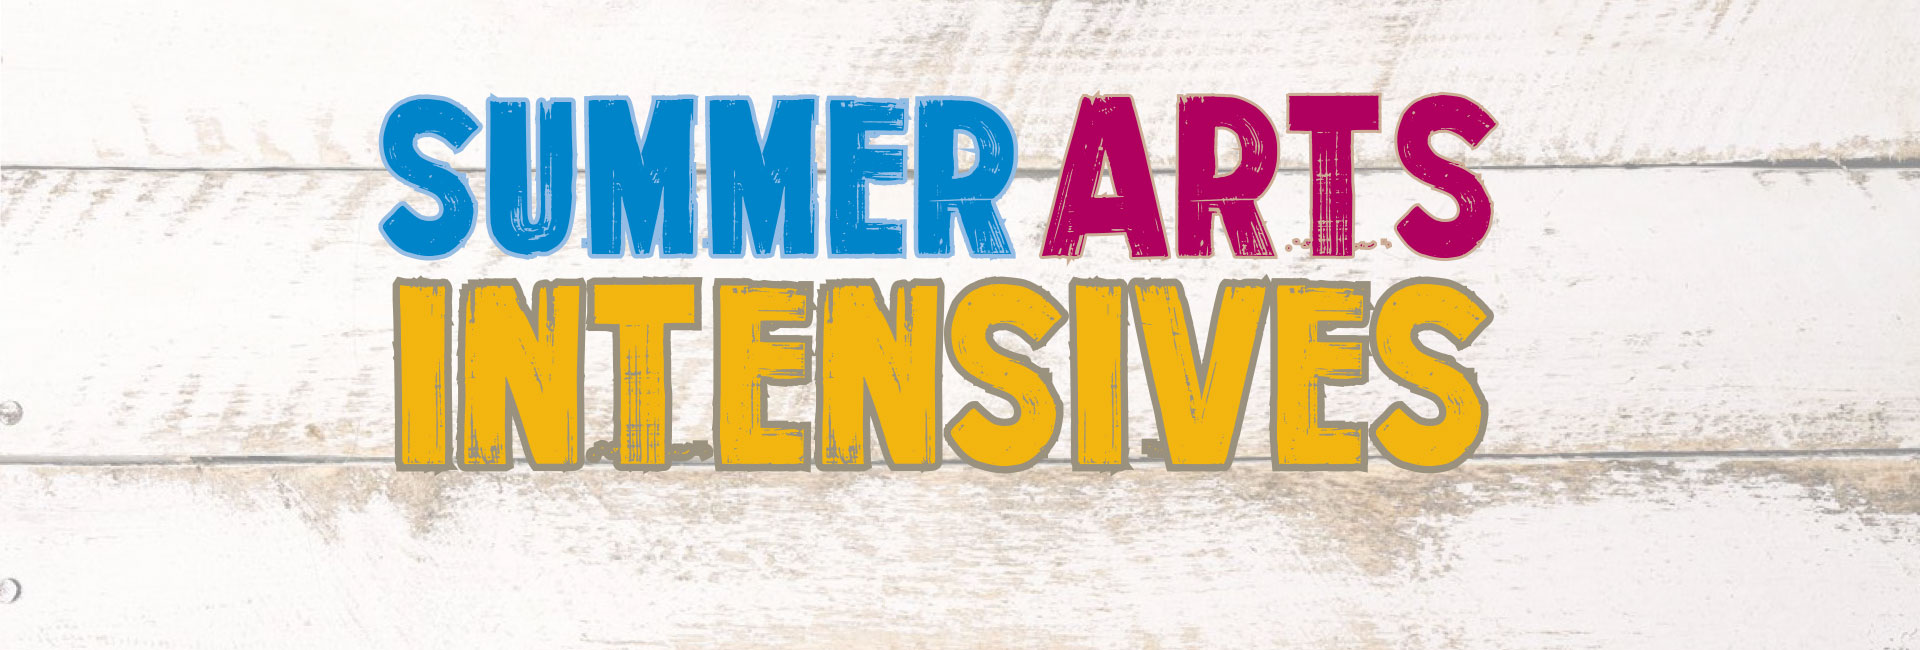 Summer Arts Intensives Web banner